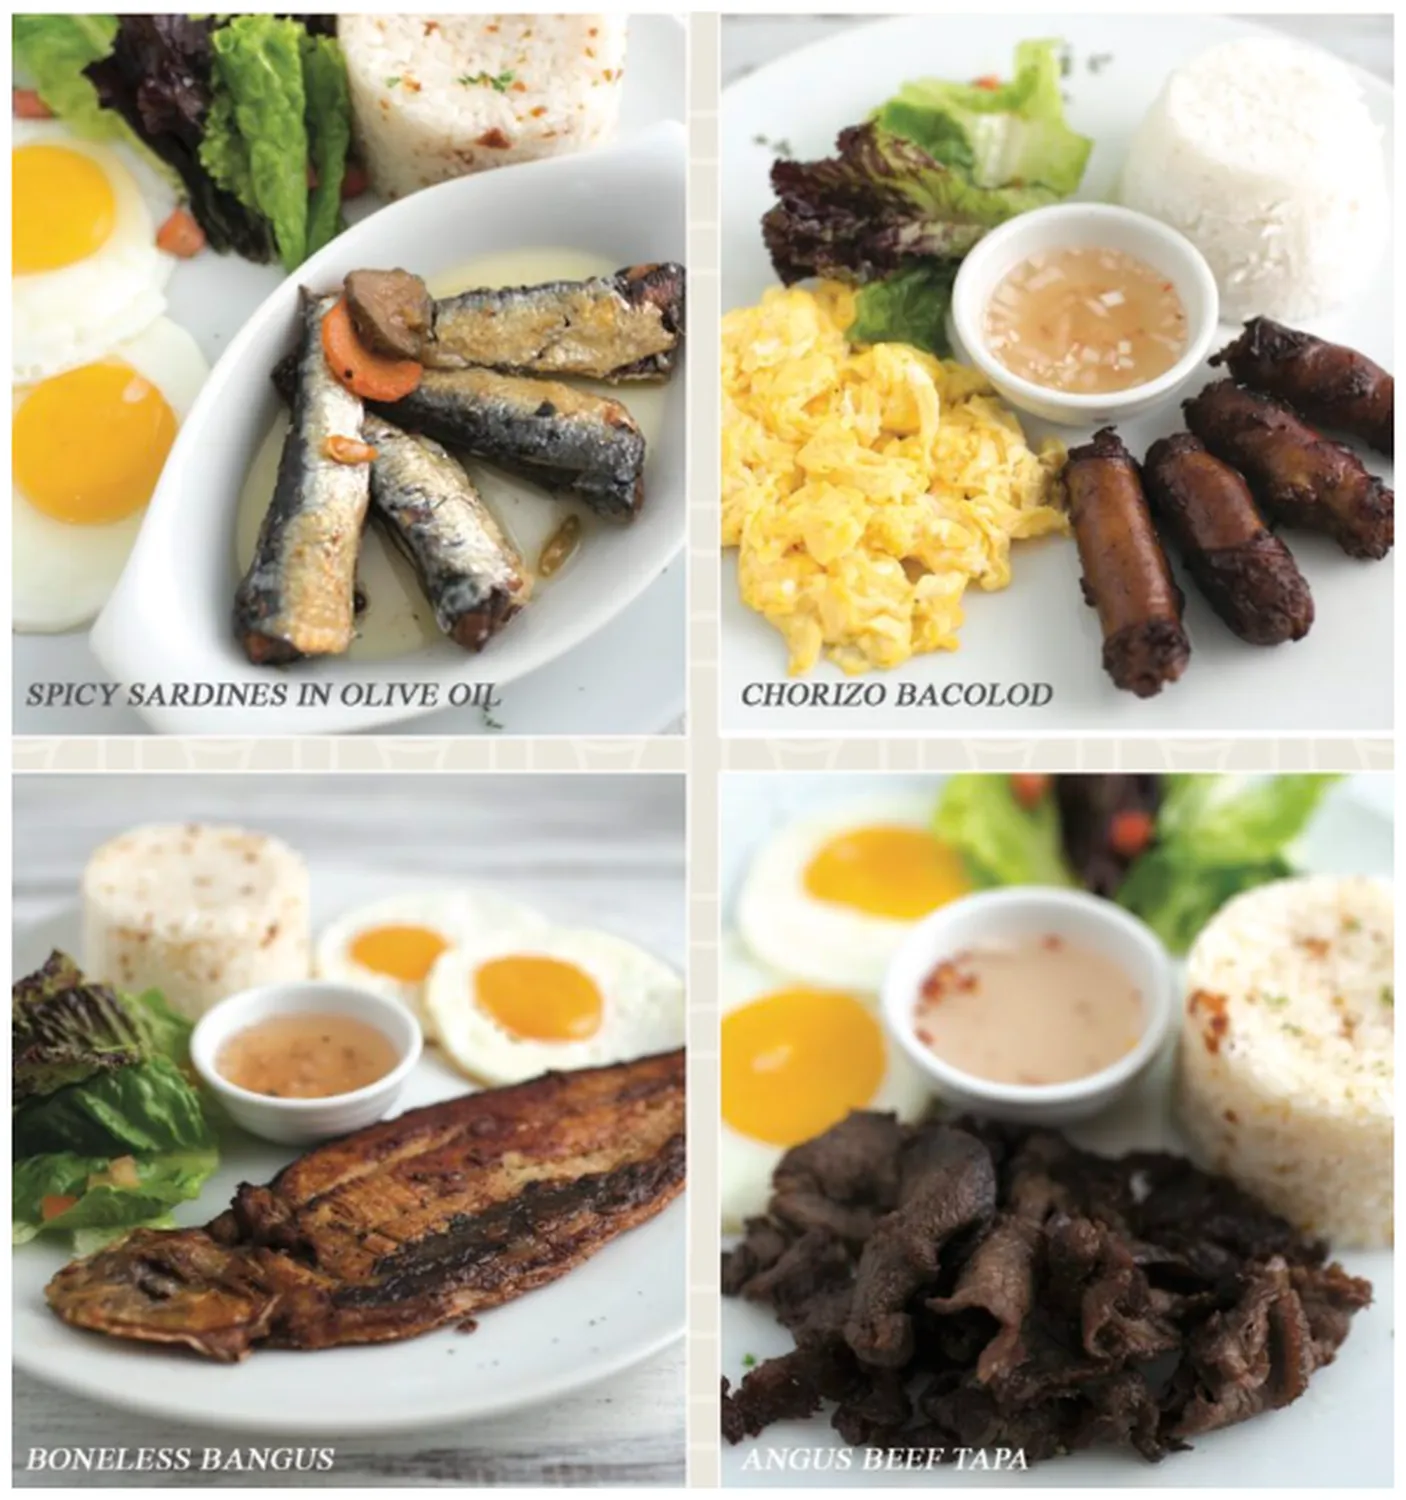 la creperie menu philippine le petit dejeuner